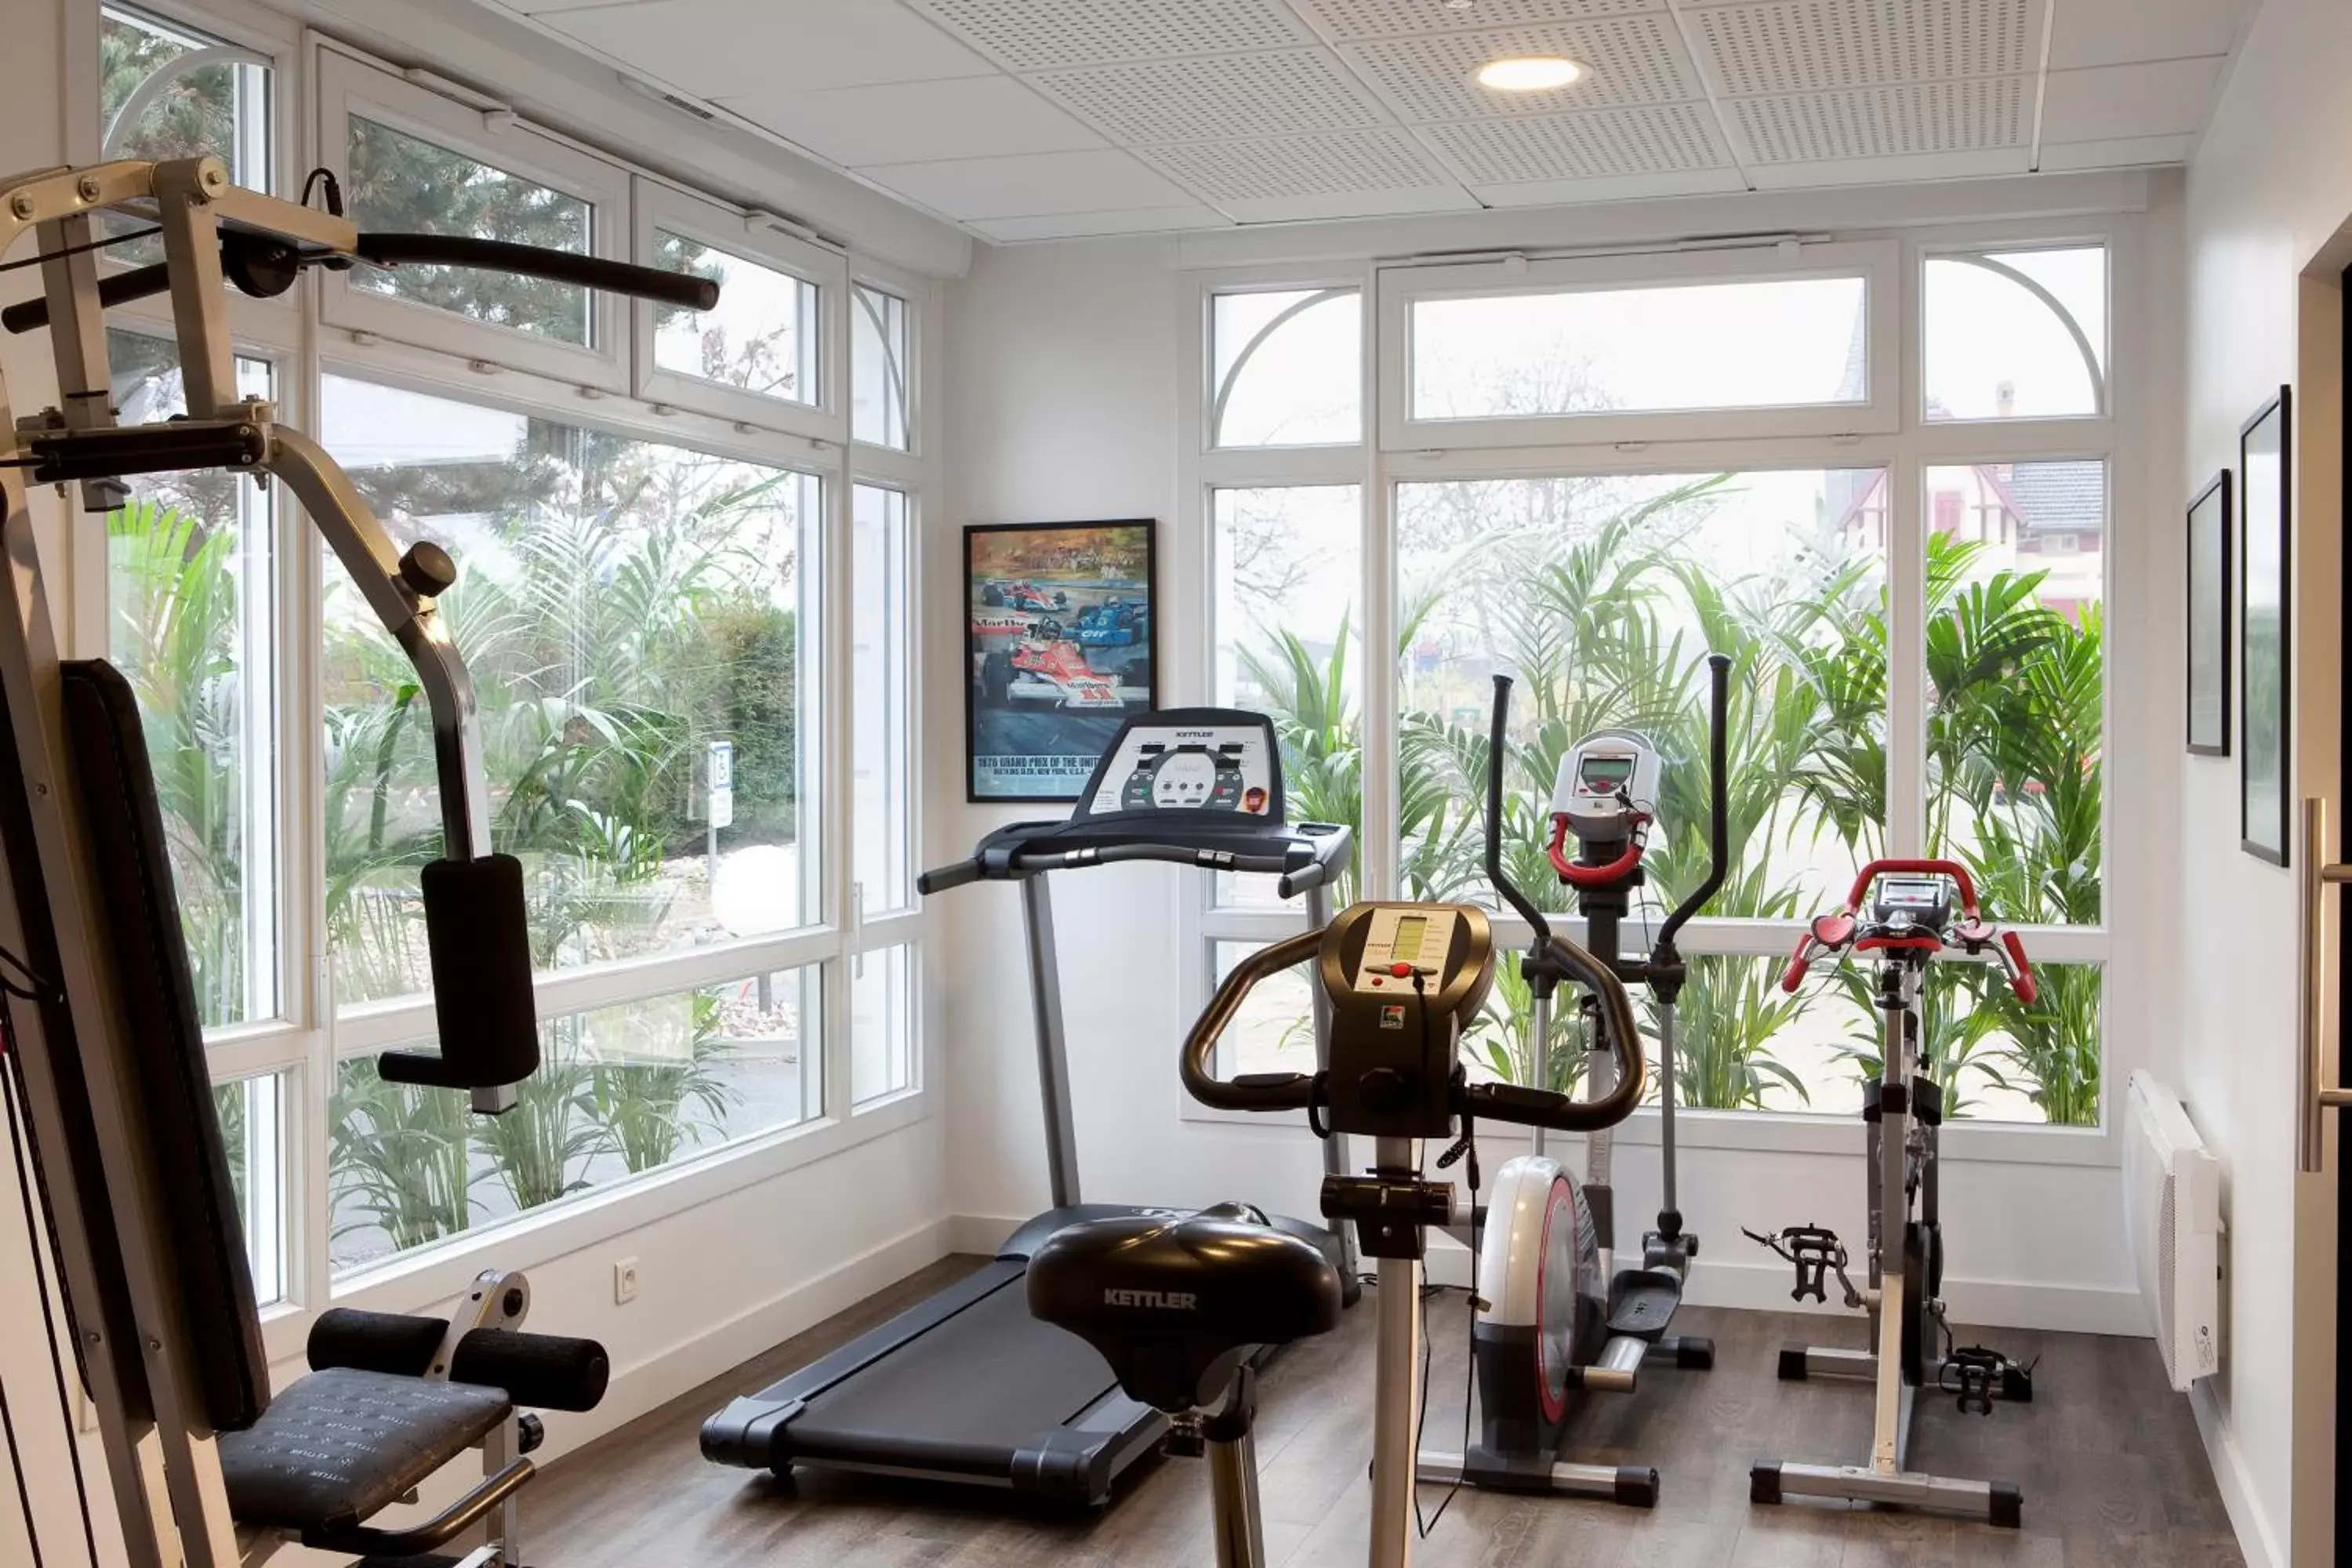 Fitness centre/facilities, Fitness Center/Facilities in Hotel Le Bugatti